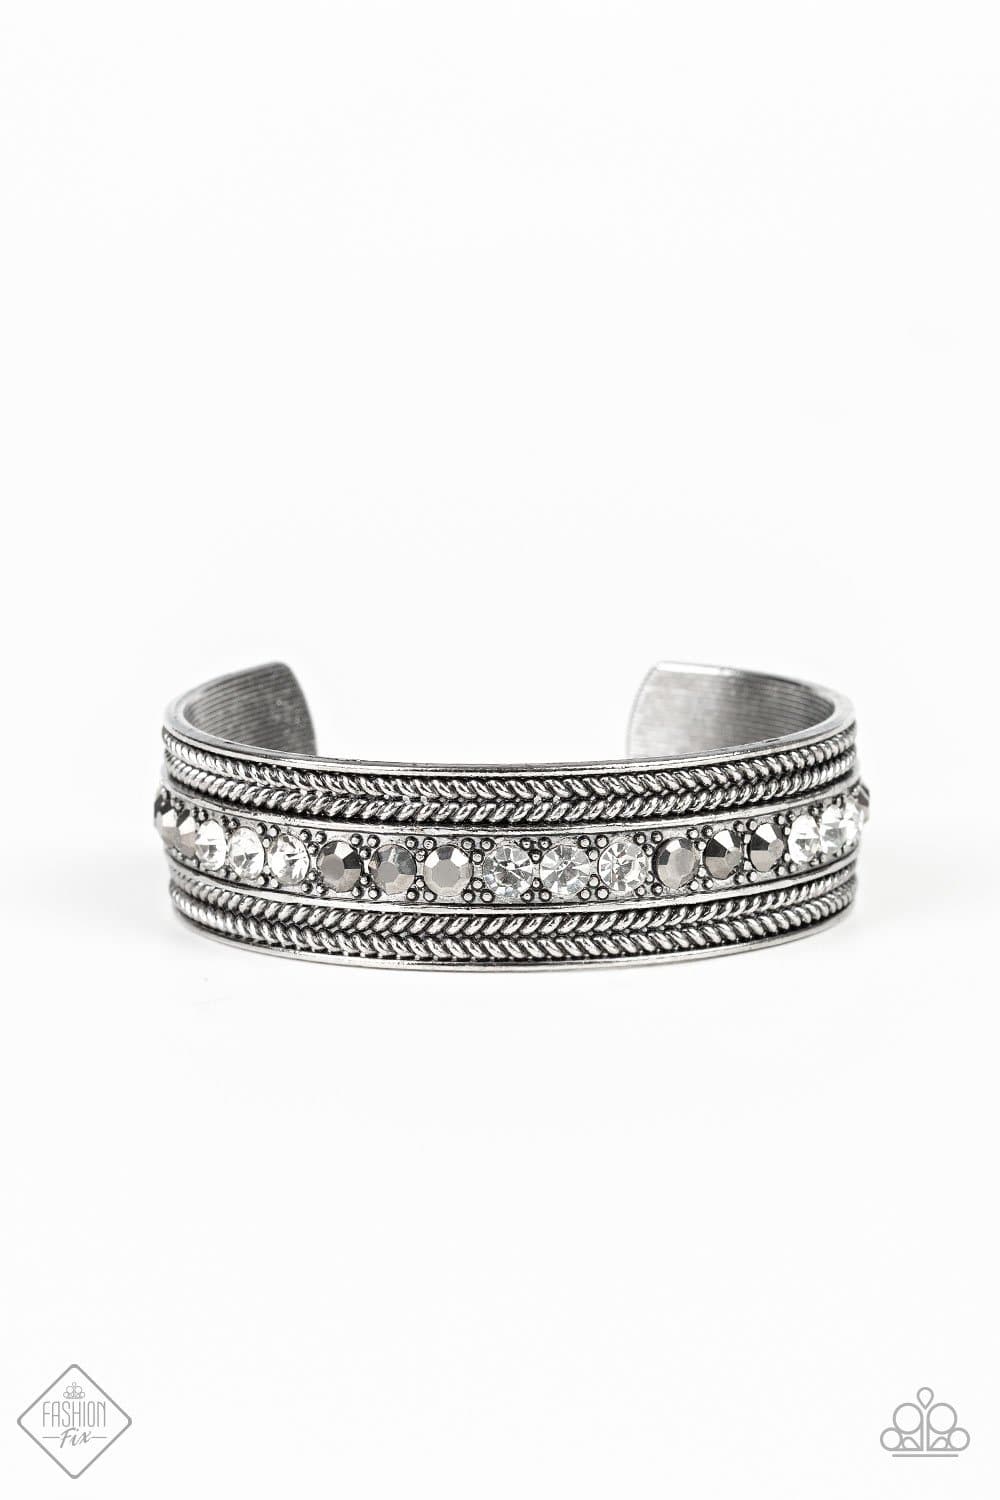 Empress Etiquette - Silver Hematite Rhinestone Cuff Bracelet - Paparazzi Accessories - GlaMarous Titi Jewels